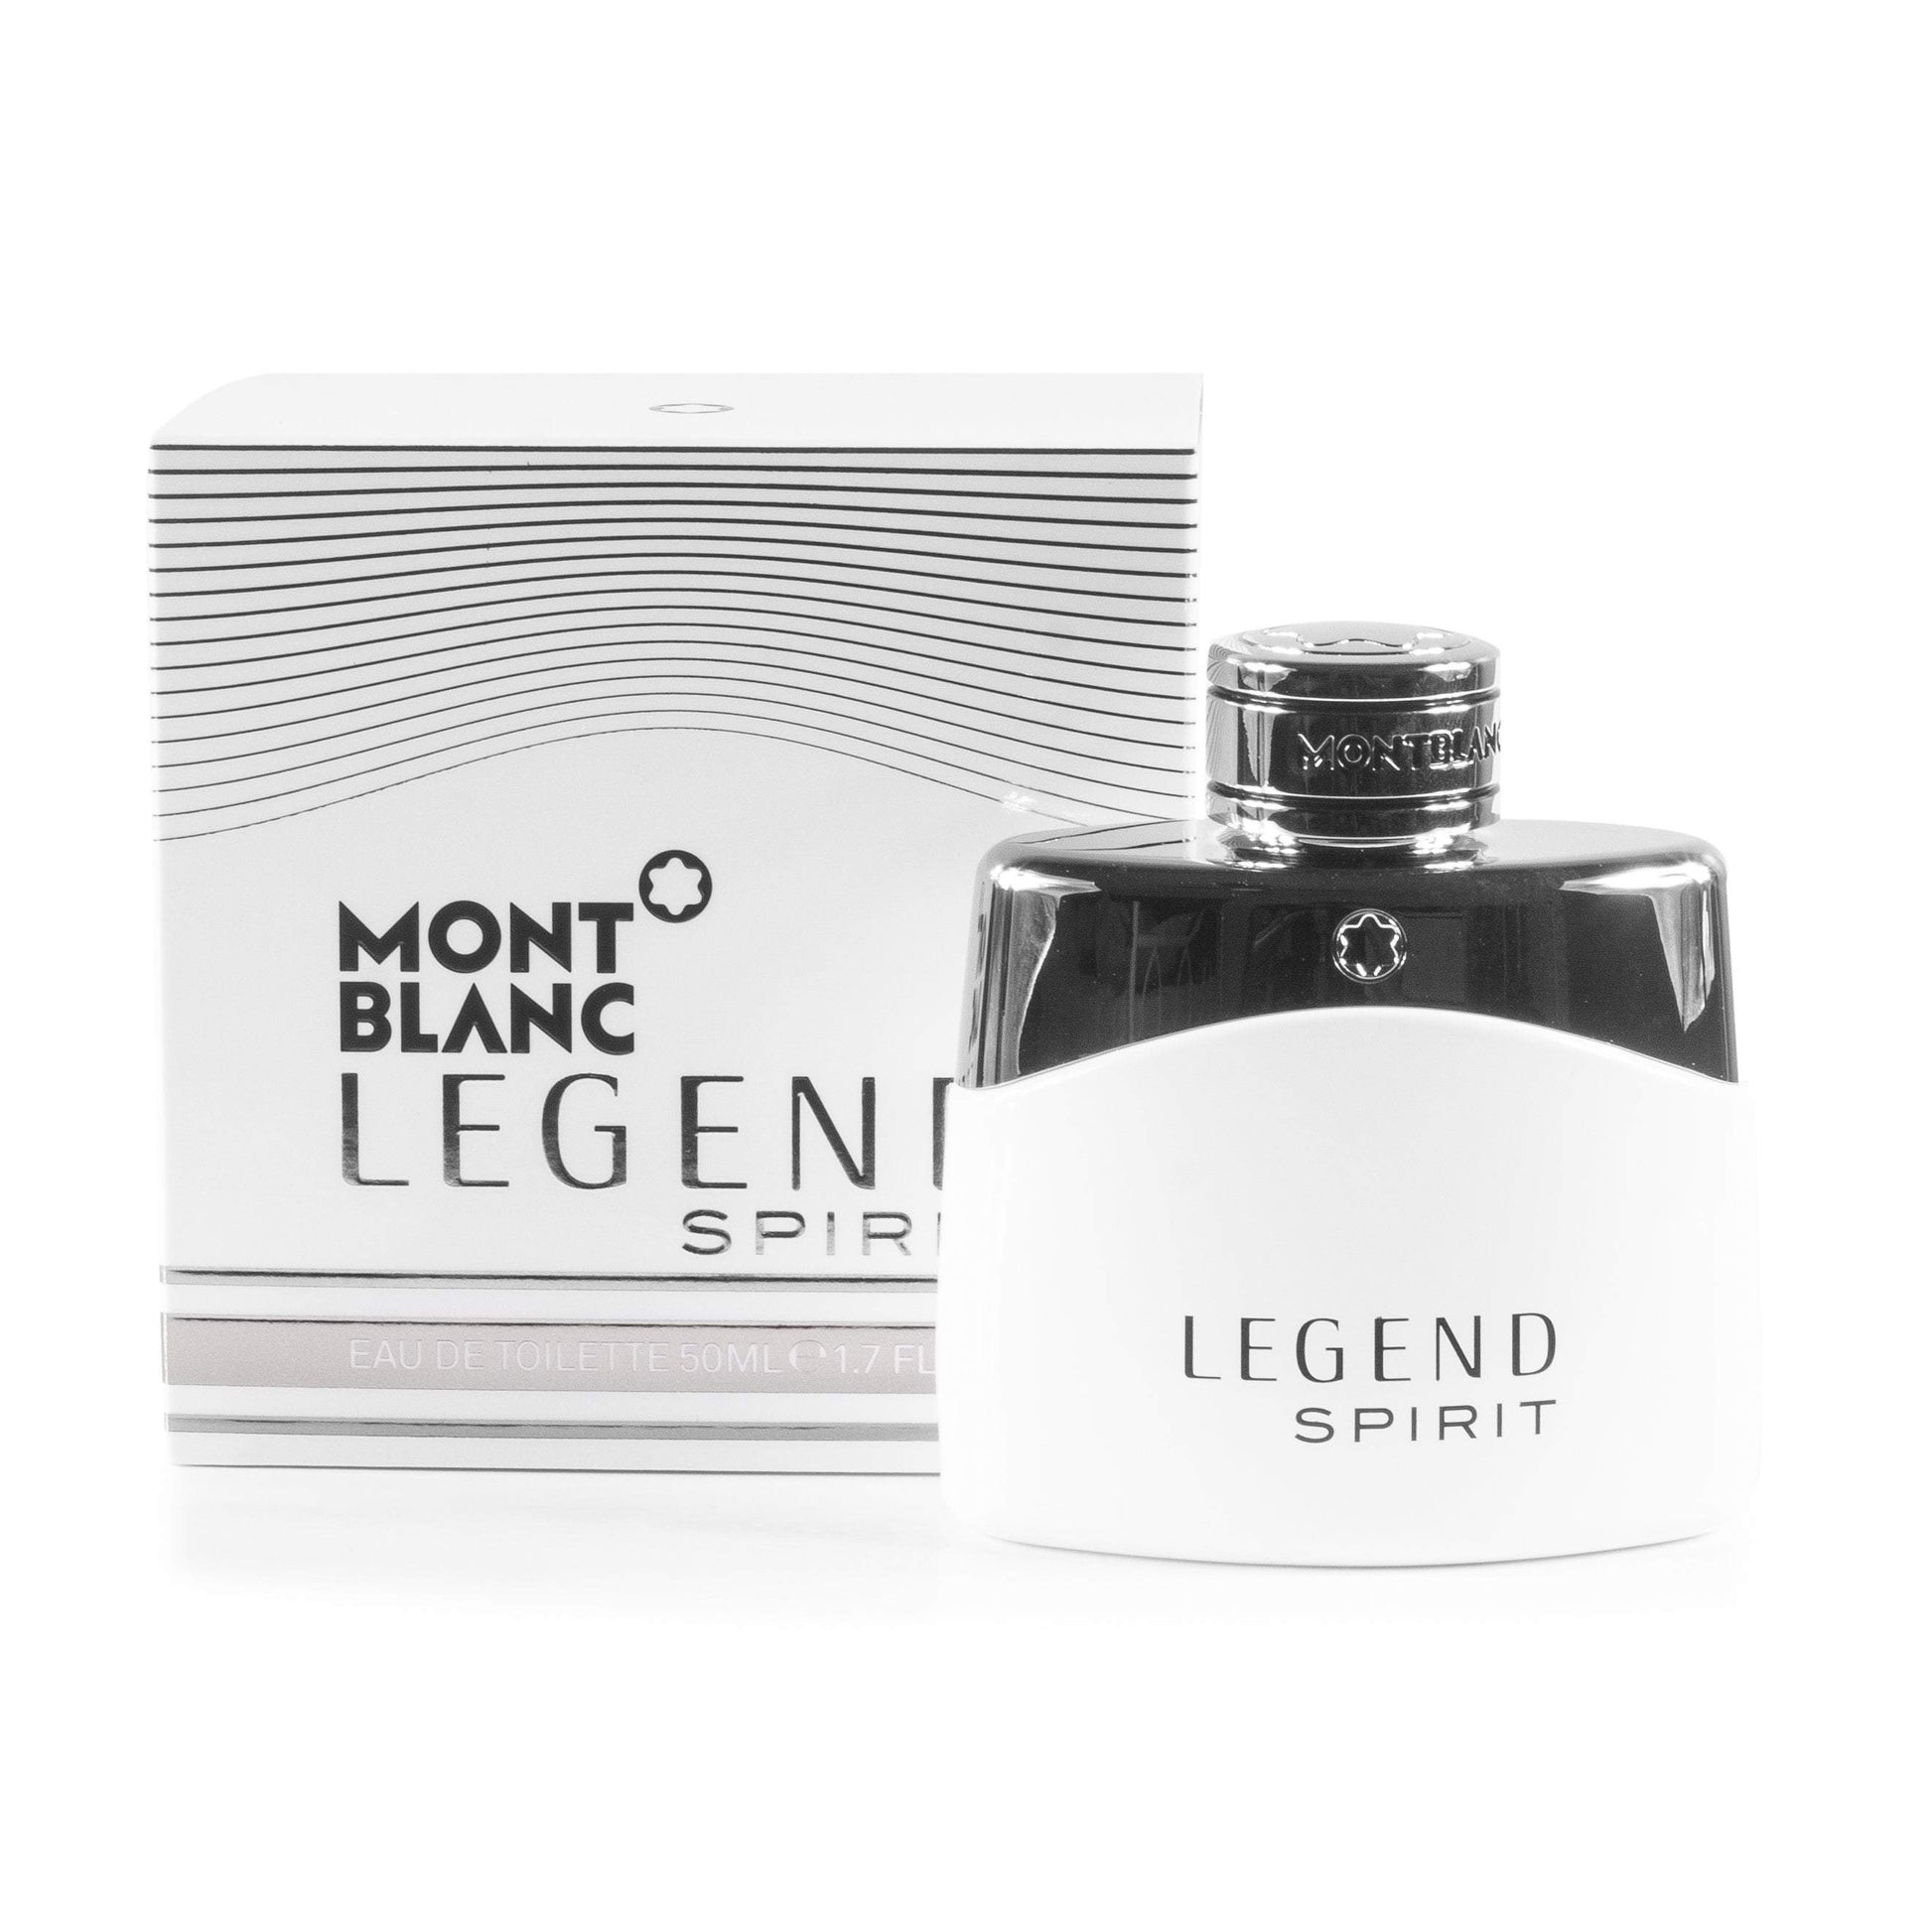 Legend Spirit Eau de Toilette Spray for Men by Montblanc, Product image 2